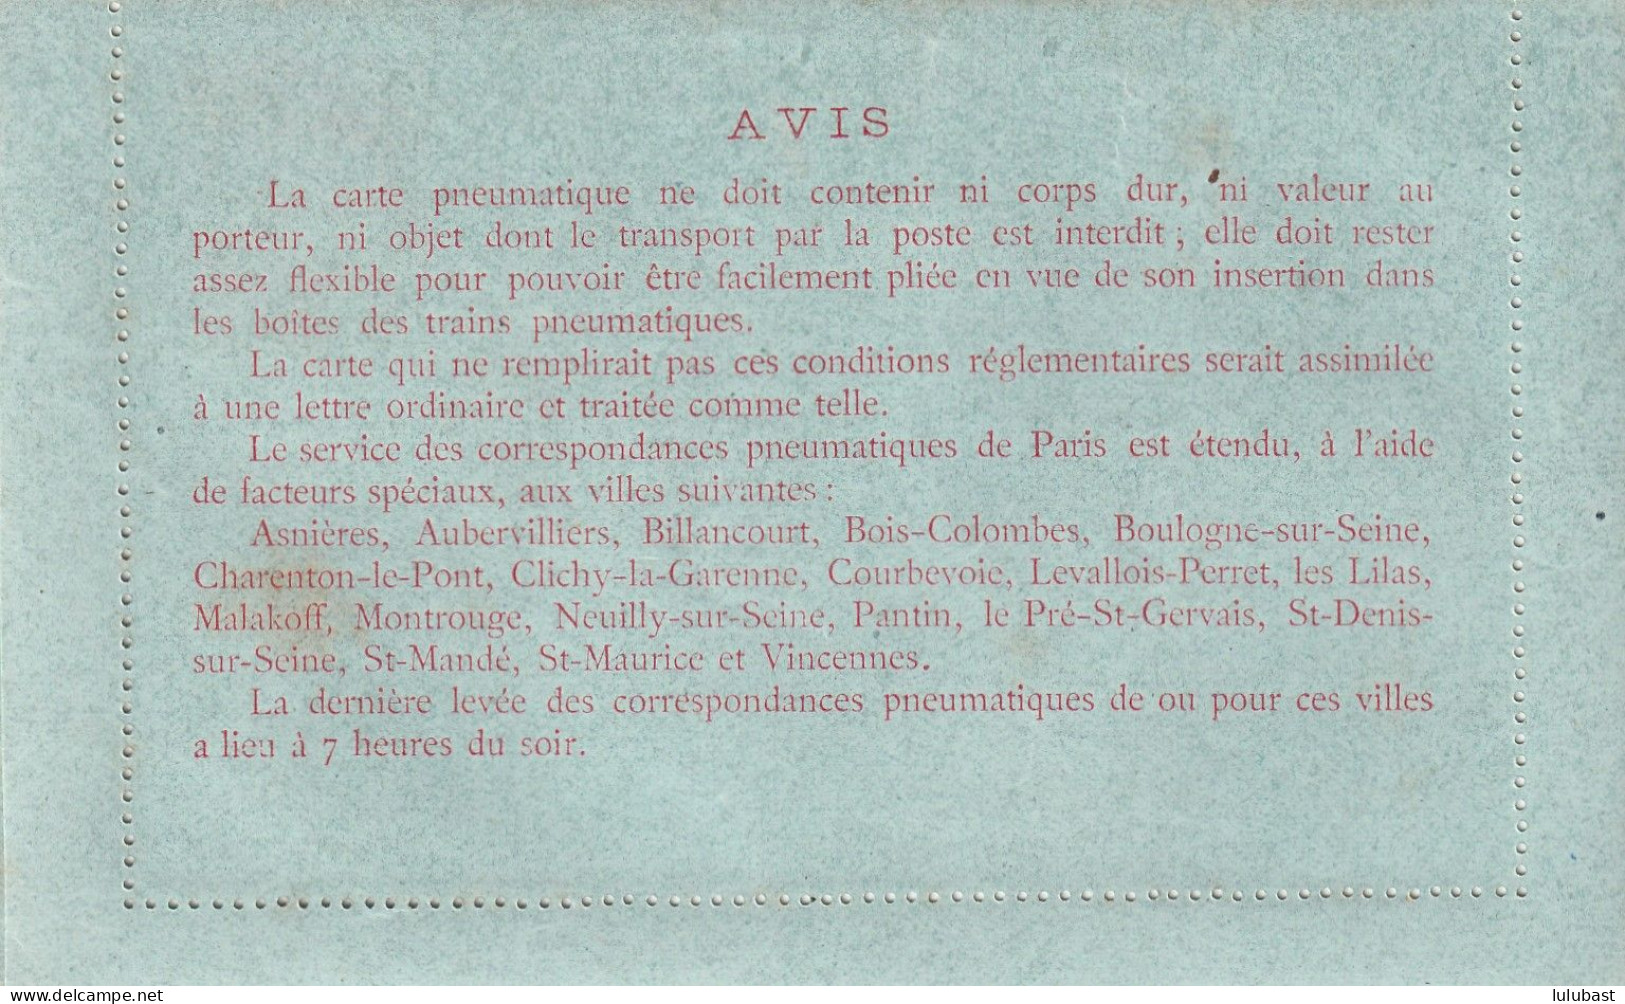 Carte Pneumatique Neuve (30c. Rouge) N° 2596. - Pneumatic Post